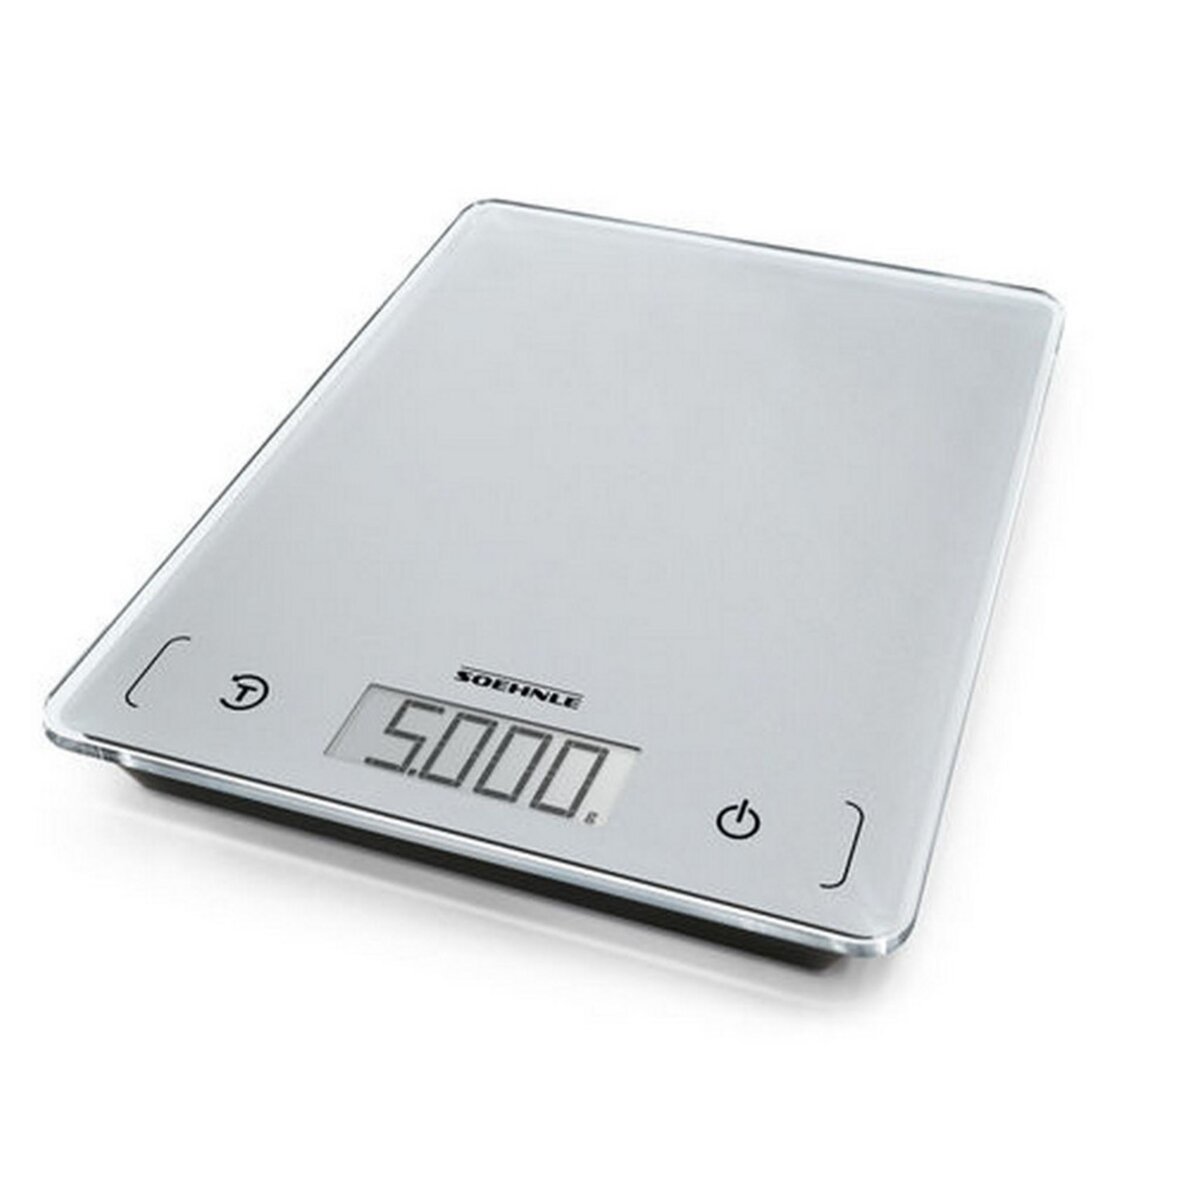 Soehnle Balance de cuisine electronique 5kg - 1g - 61502